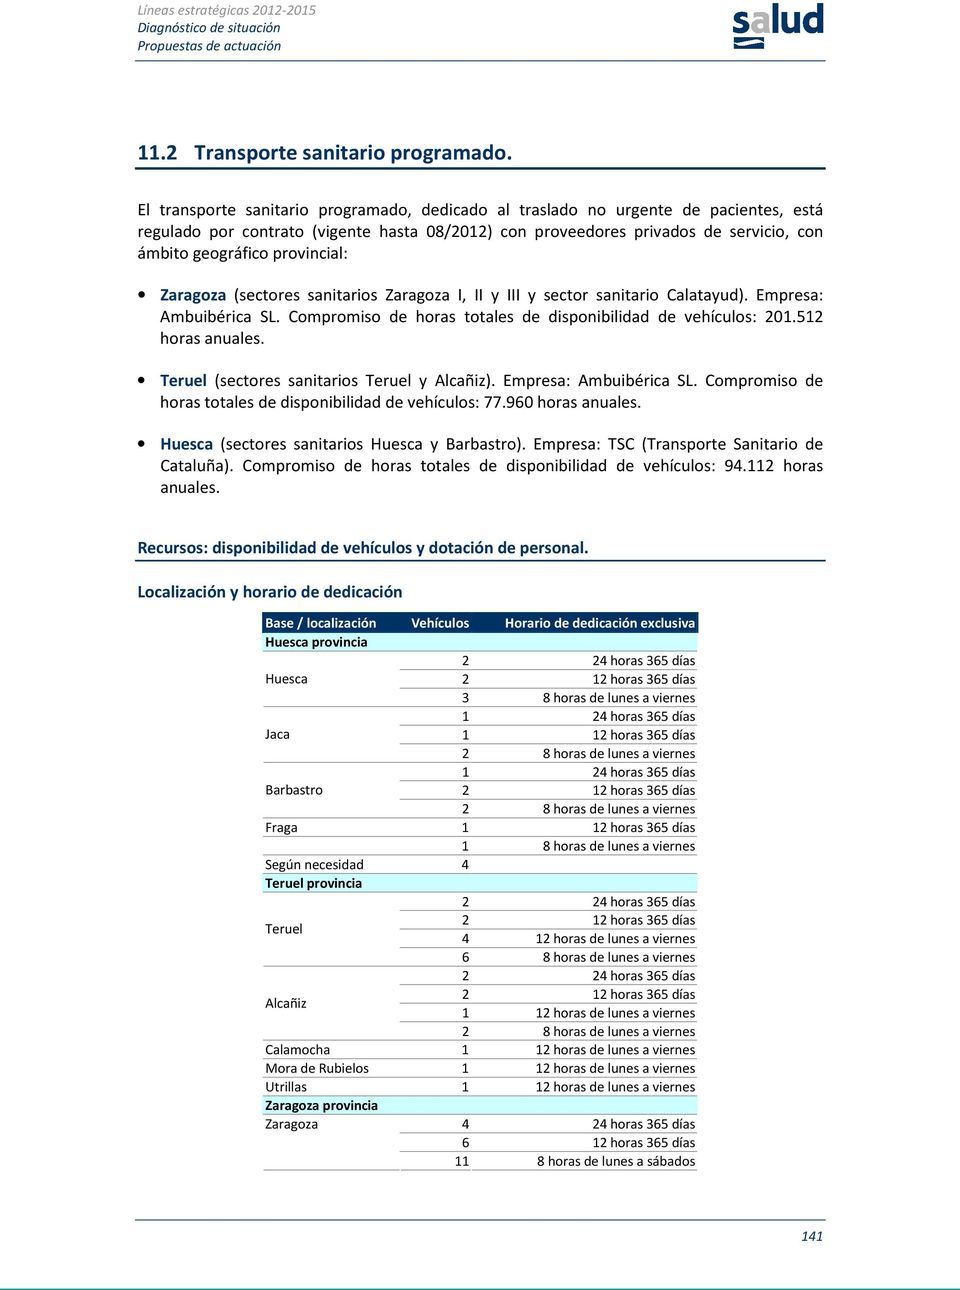 provincial: Zaragoza (sectores sanitarios Zaragoza I, II y III y sector sanitario Calatayud). Empresa: Ambuibérica SL. Compromiso de horas totales de disponibilidad de vehículos: 201.